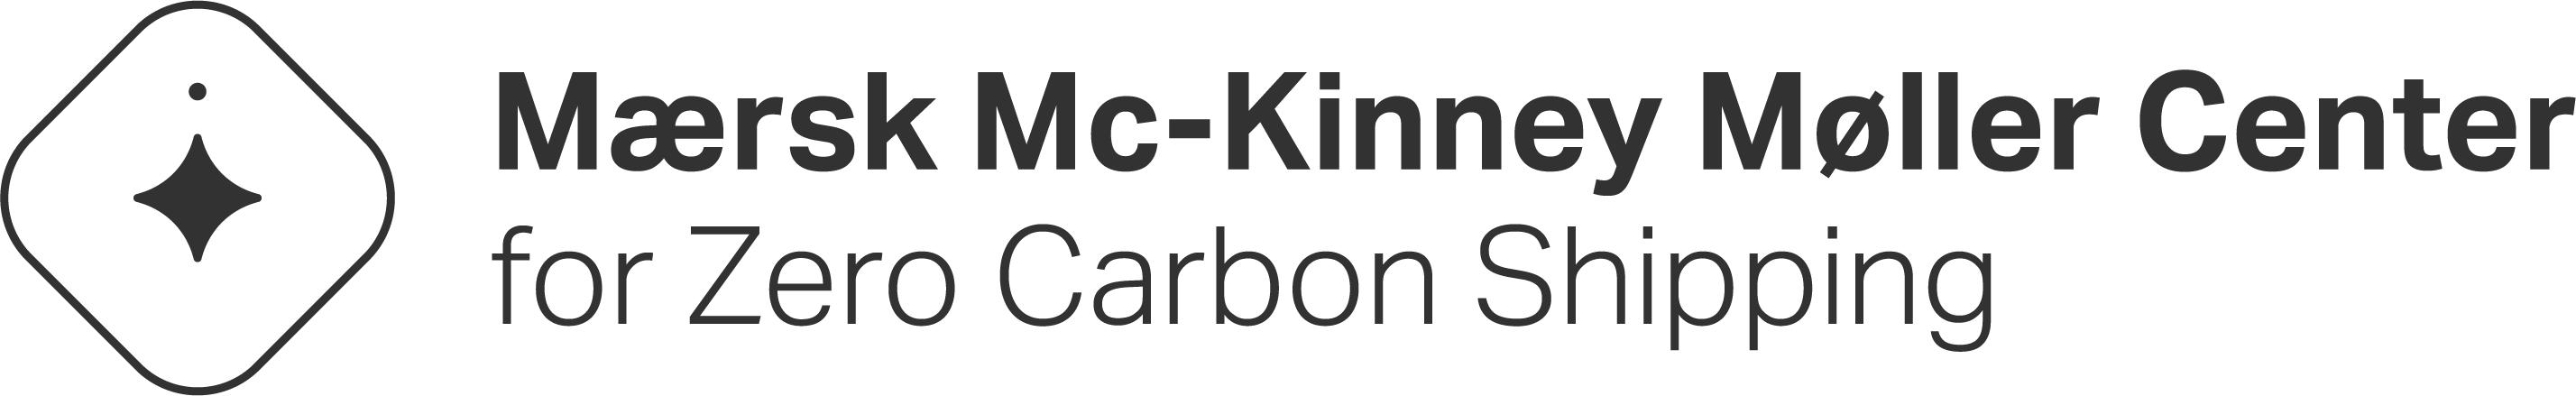 Maersk Mc-Kinney Moller Center for Zero Carbon Shipping Logo